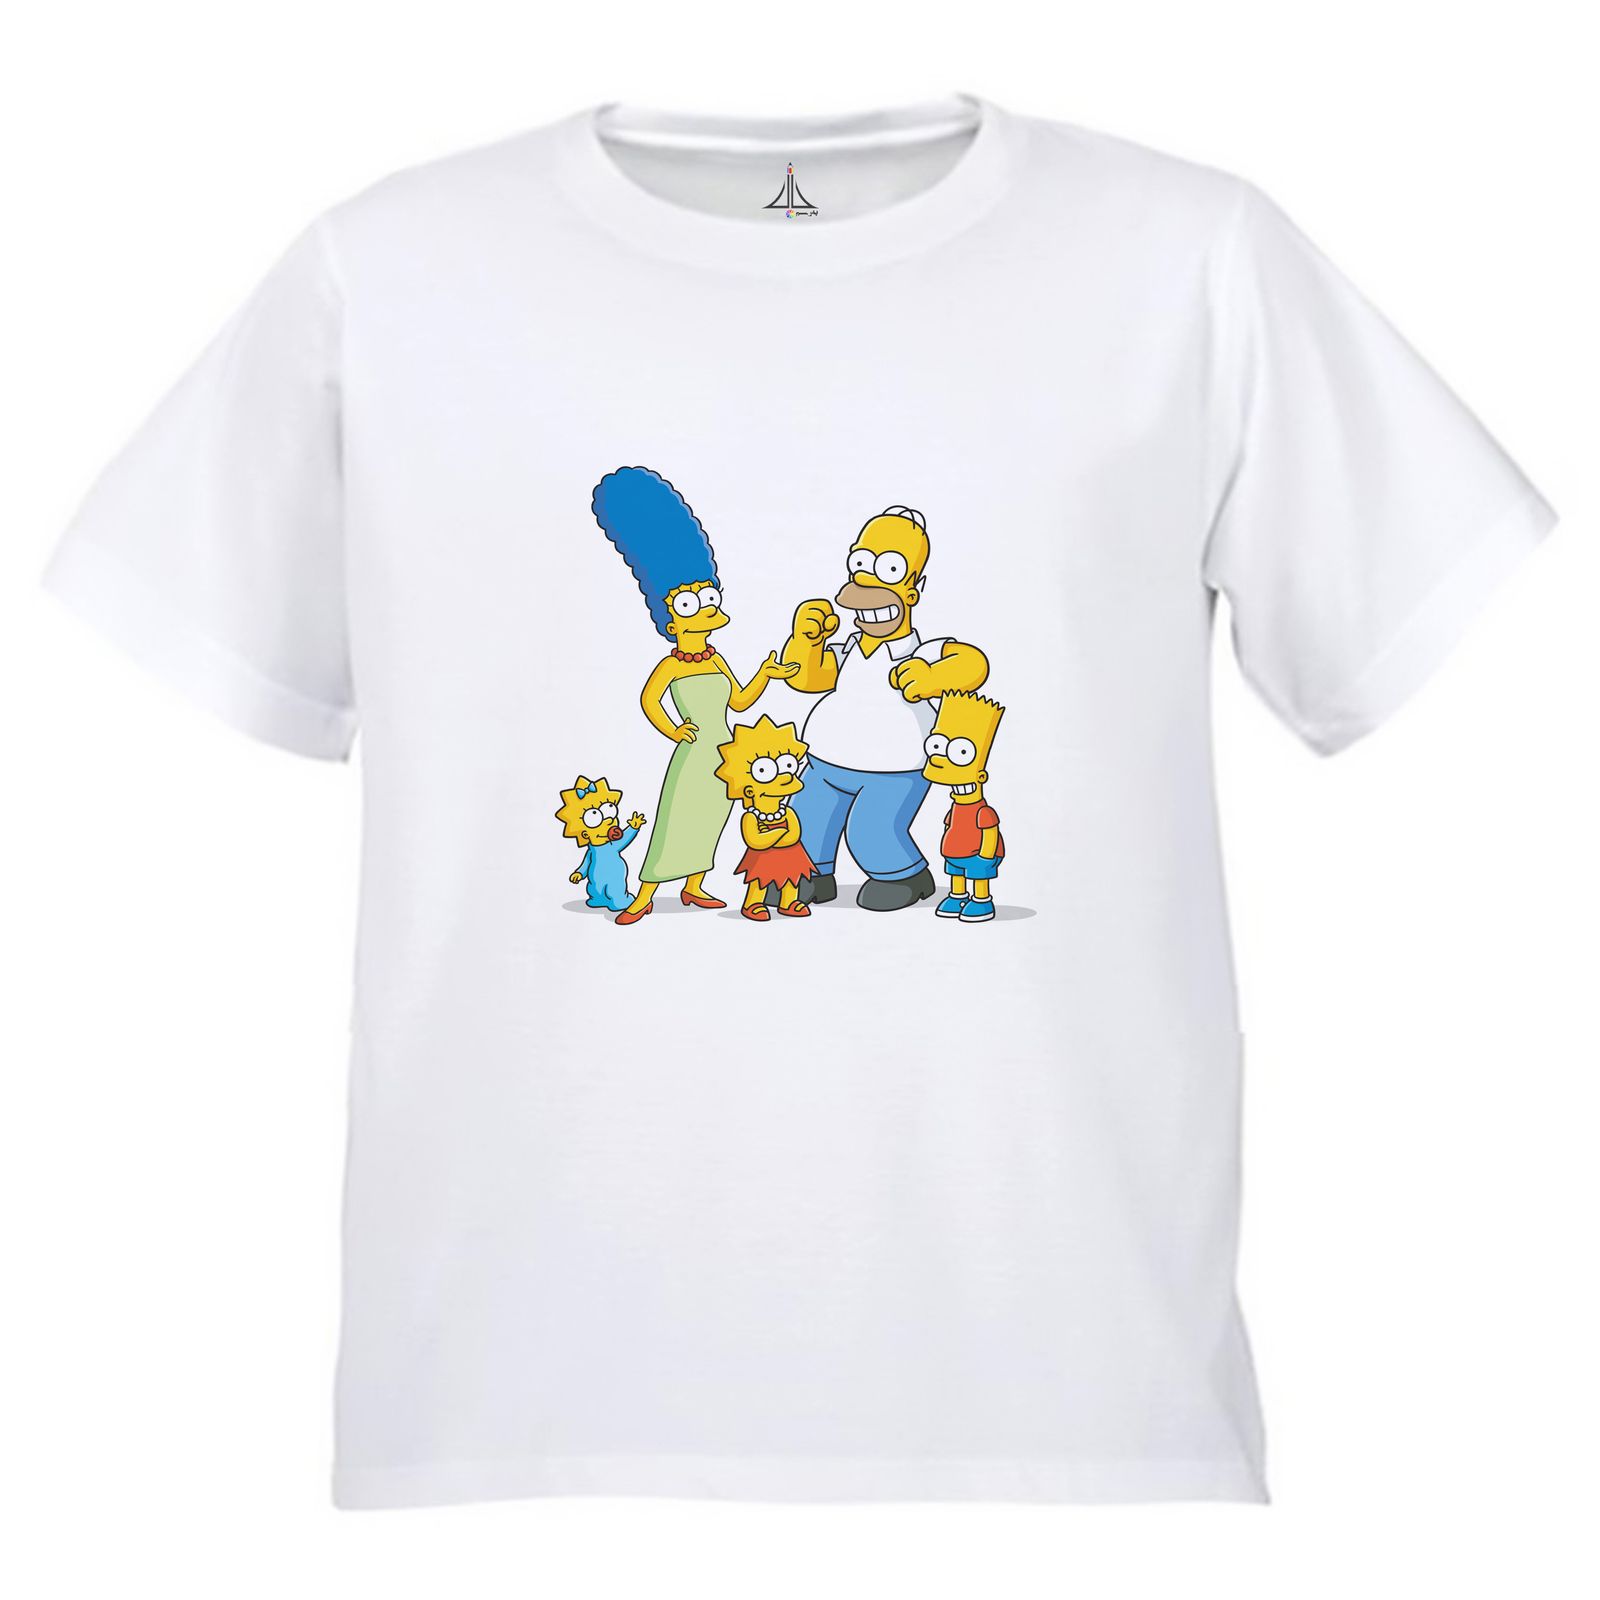 تی شرت آستین کوتاه بچگانه به رسم مدل سیپسون ها کد 9941